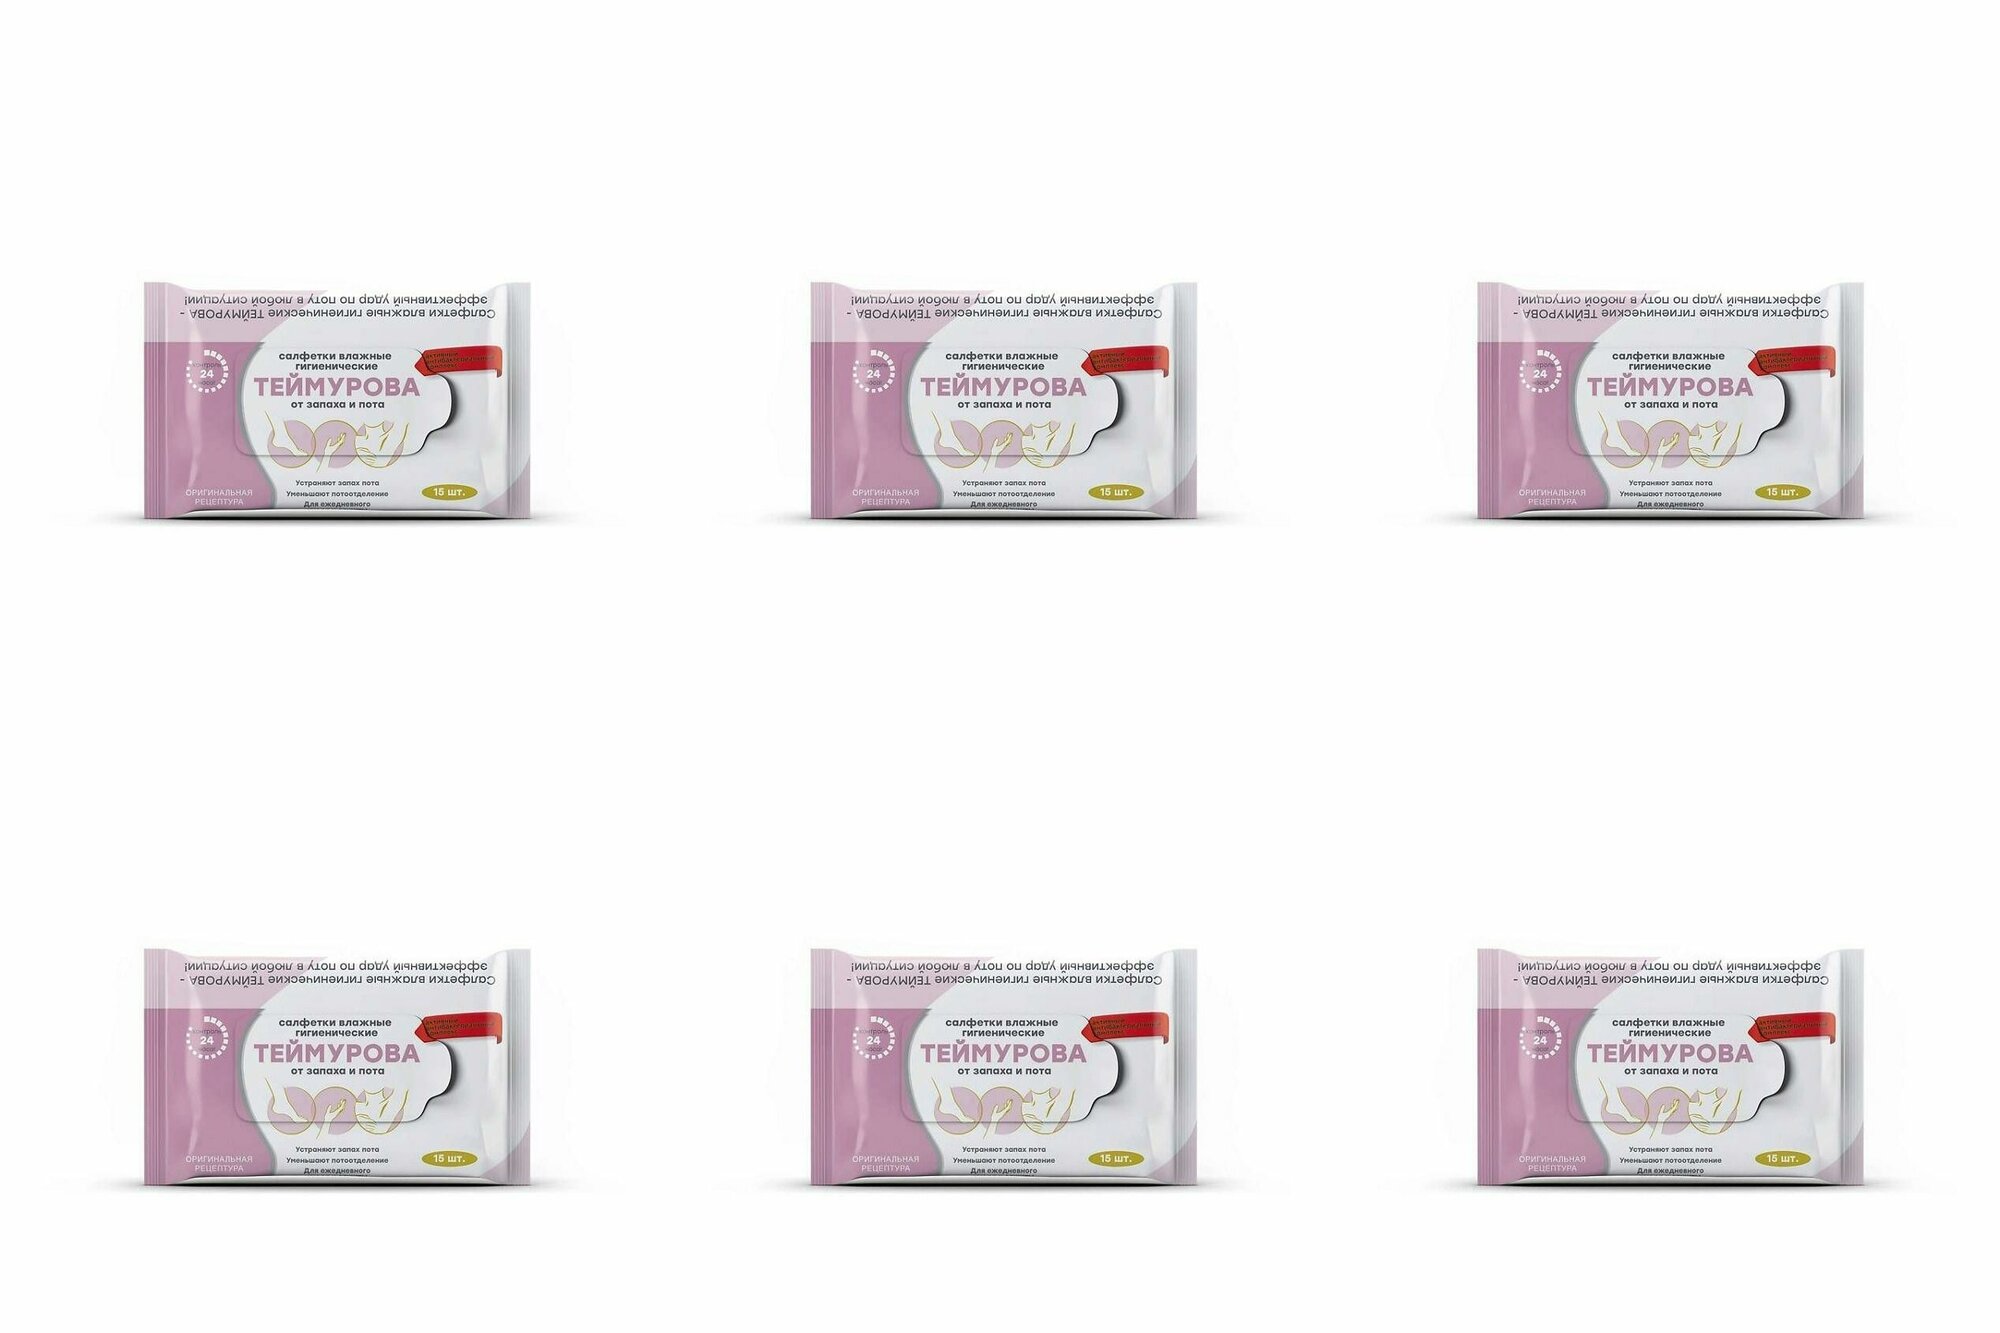 Теймурова Салфетки влажные гигиенические от запаха и пота, 6 упаковок